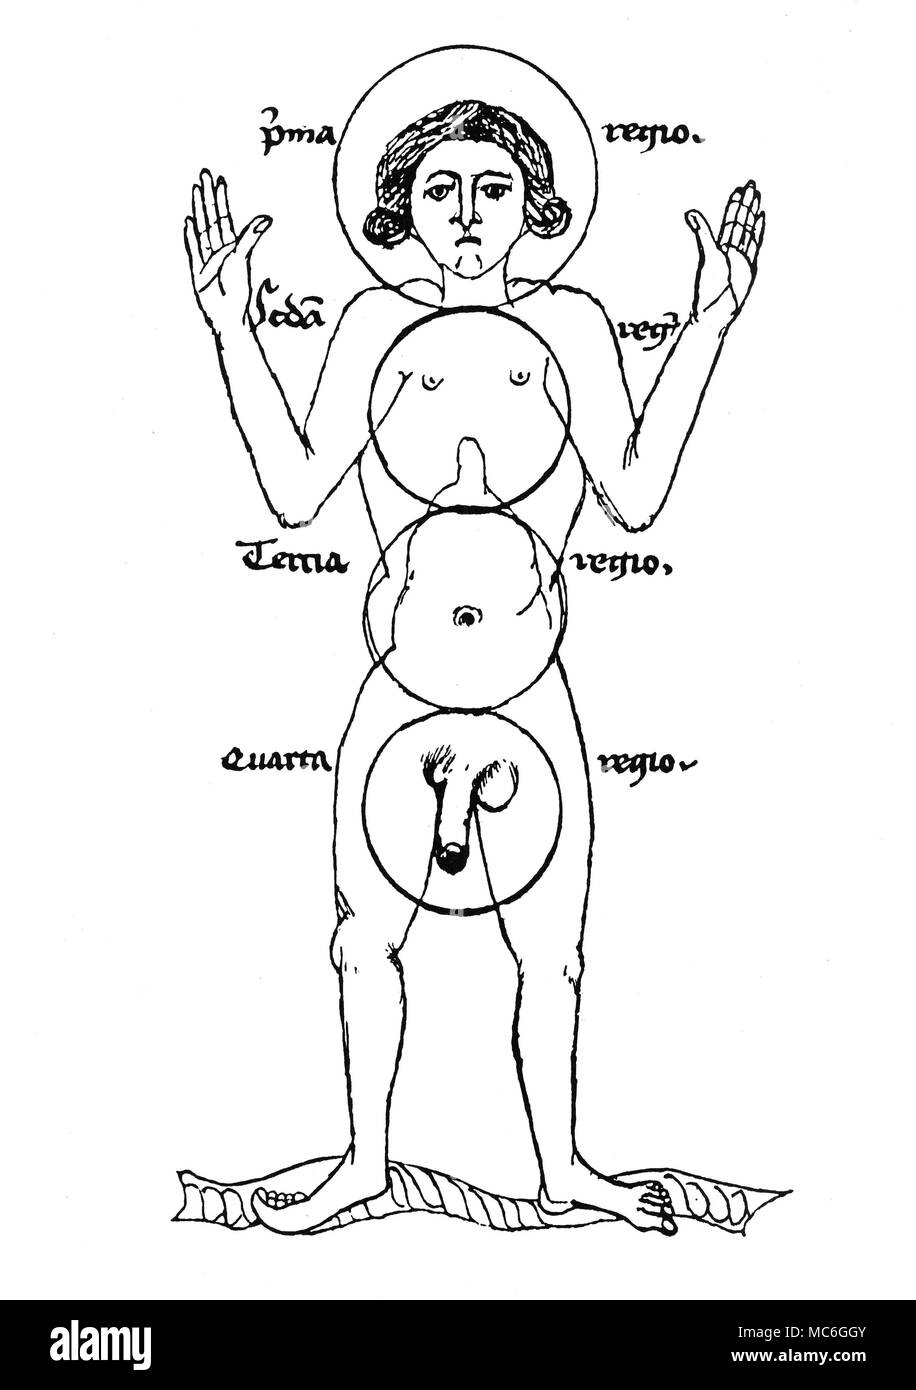 Medico disegno medievale (inizio XV secolo) che mostra le quattro "regioni" del corpo umano. La parte superiore (PMA - che è, prima che la parte del corpo che l'anima. Il secondo (seda,- che è, secunda) è quella parte del corpo relative alle cose spirituali. Il terzo (terna) è quello in cui la nutrizione avviene mentre la quarta (quarta) è la parte che contiene la potenza di generazione. Questo schema rivela l'influenza dell'alchimia sulla medicina medievale - le aree dei tre principi di sale, mercurio e zolfo sono chiaramente definiti. Da "Eine Pariser 'Ketham' Handshfit aus der Zeit Foto Stock